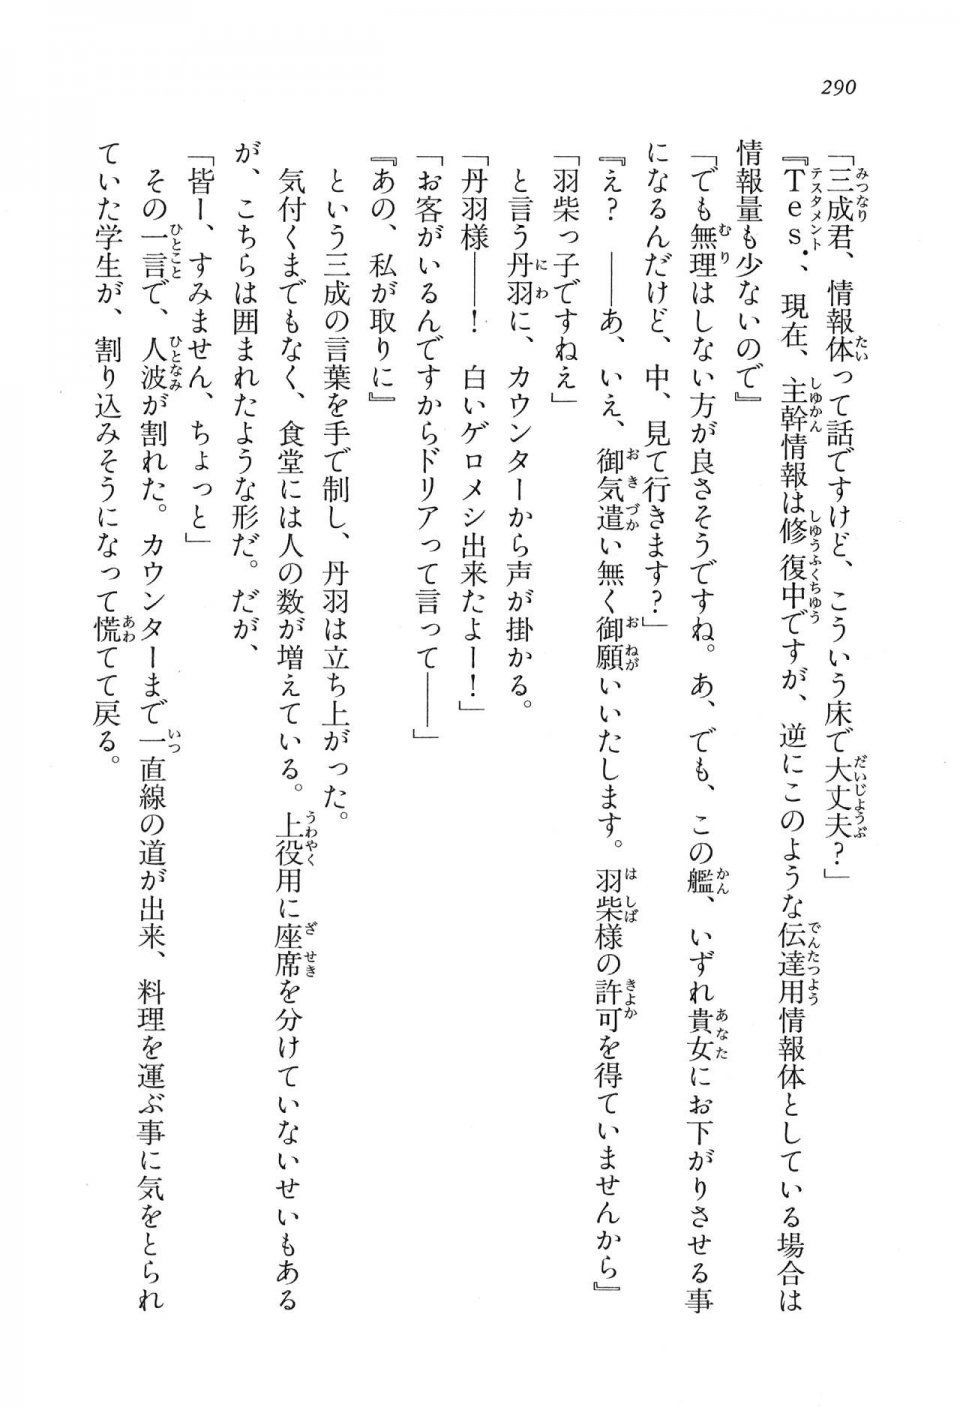 Kyoukai Senjou no Horizon LN Vol 16(7A) - Photo #290